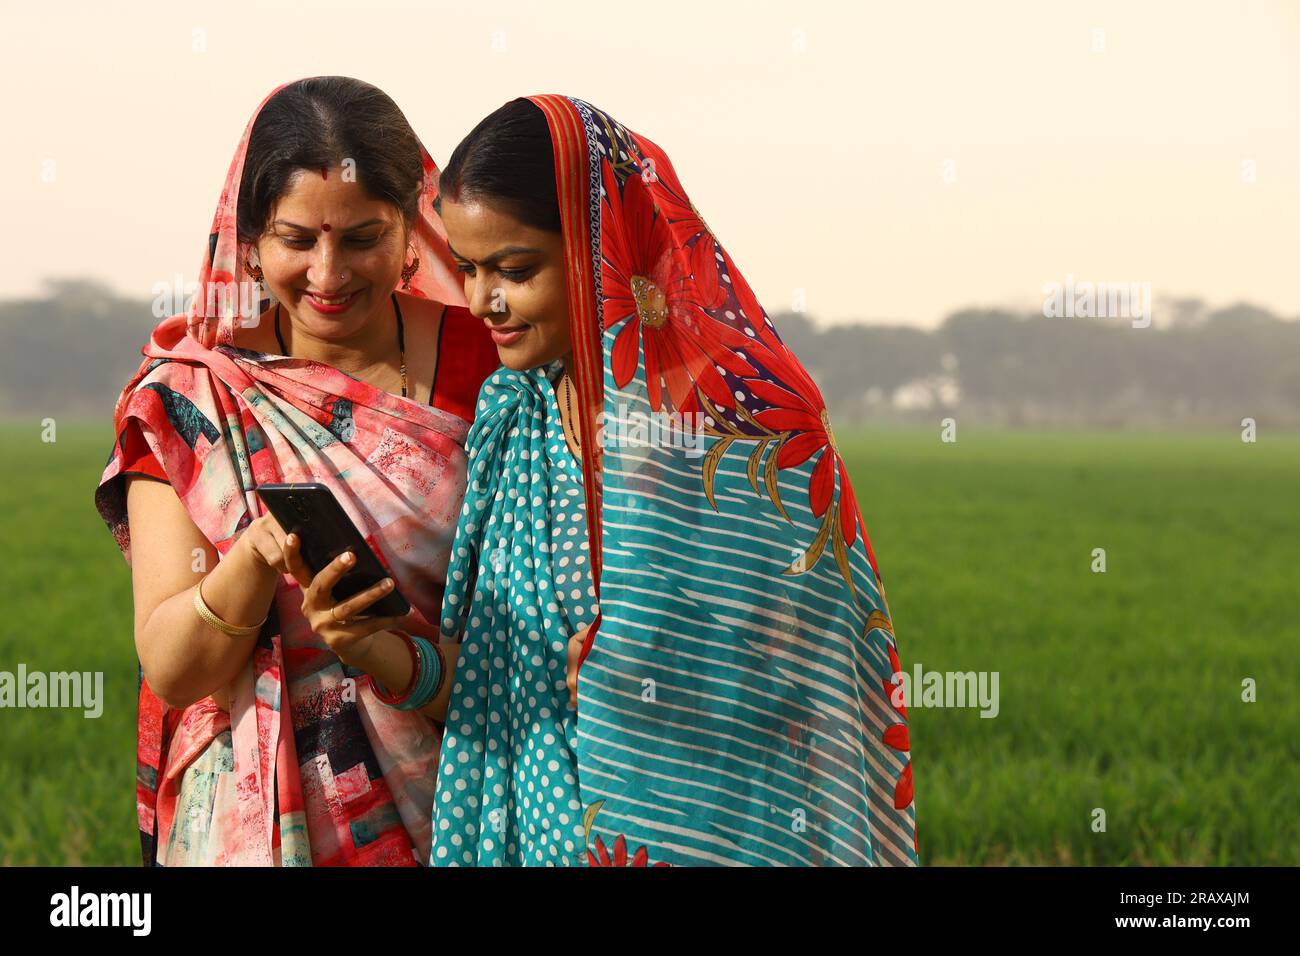 Glückliche, ländliche indische Frauen, die auf einem Senf-Ackerfeld stehen und mit dem Handy in der Hand surfen. Stockfoto